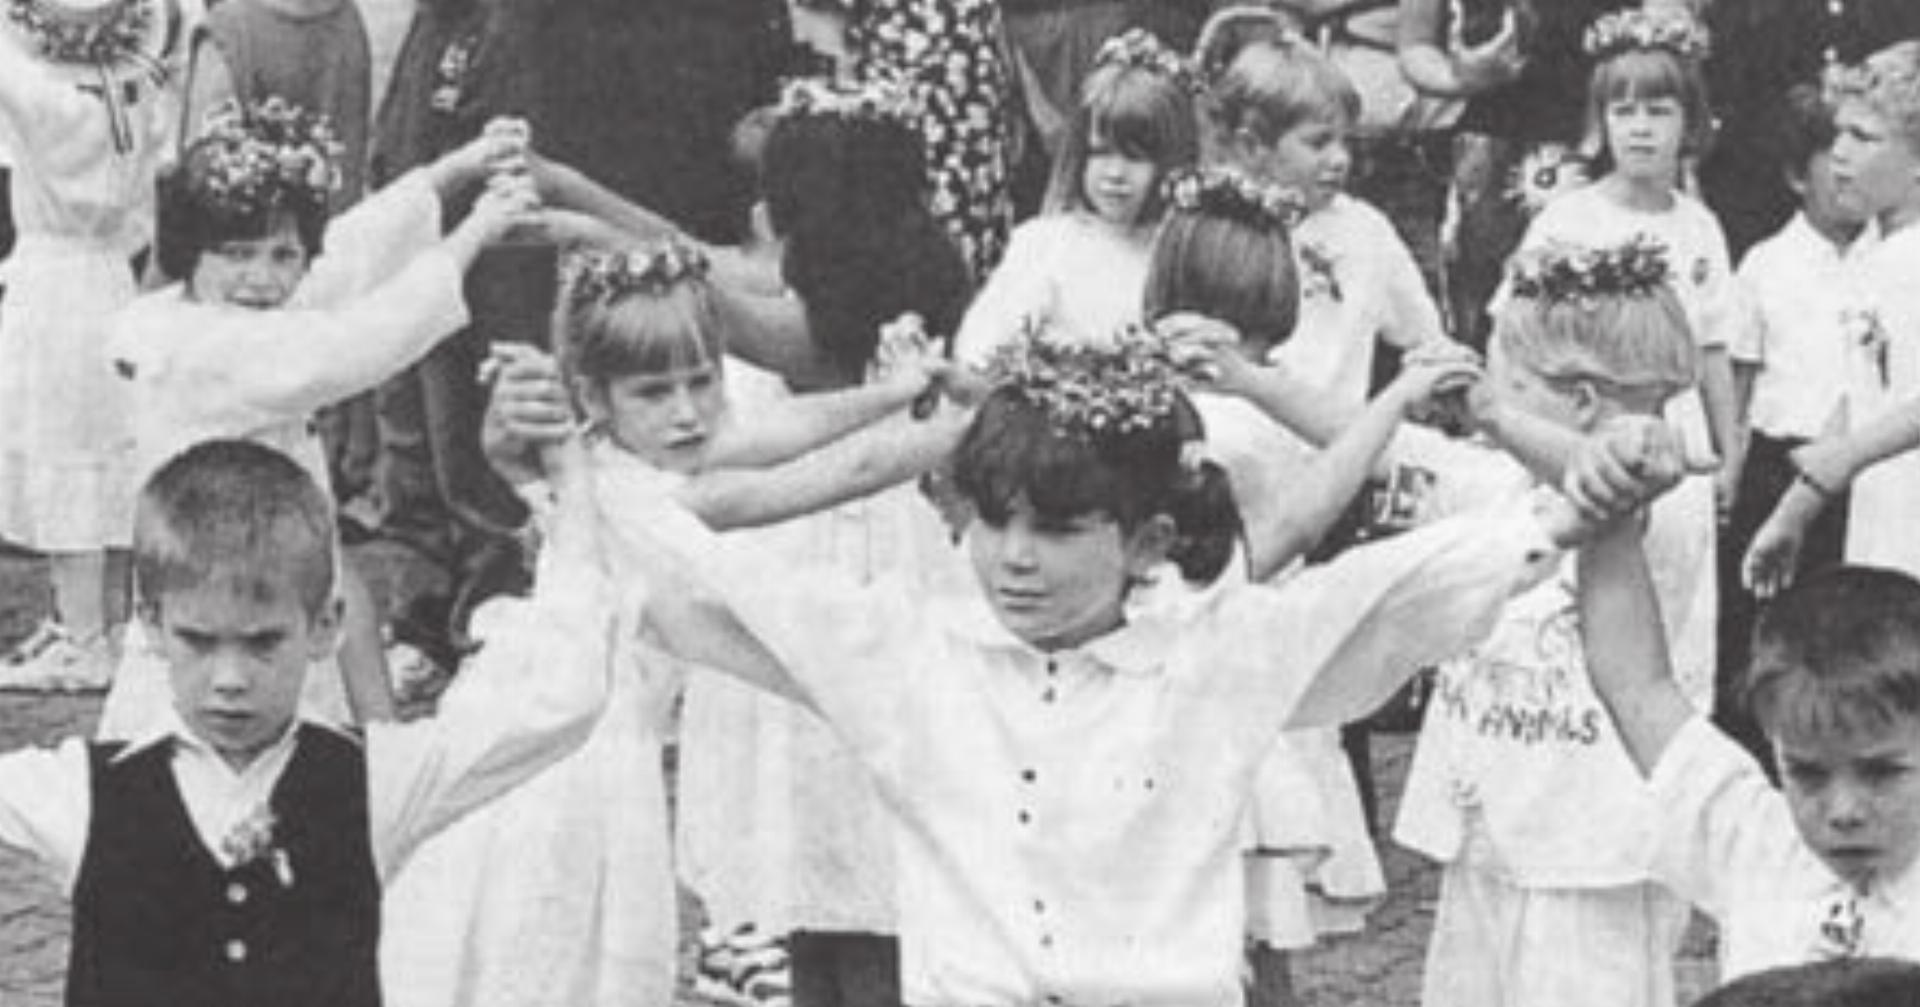 Gesang und Tanz als Ausdruck der Freude: In Wohlen haben die Jüngsten ihre Eltern und Bekannten nach einem Umzug bestens unterhalten. Bild: Archiv